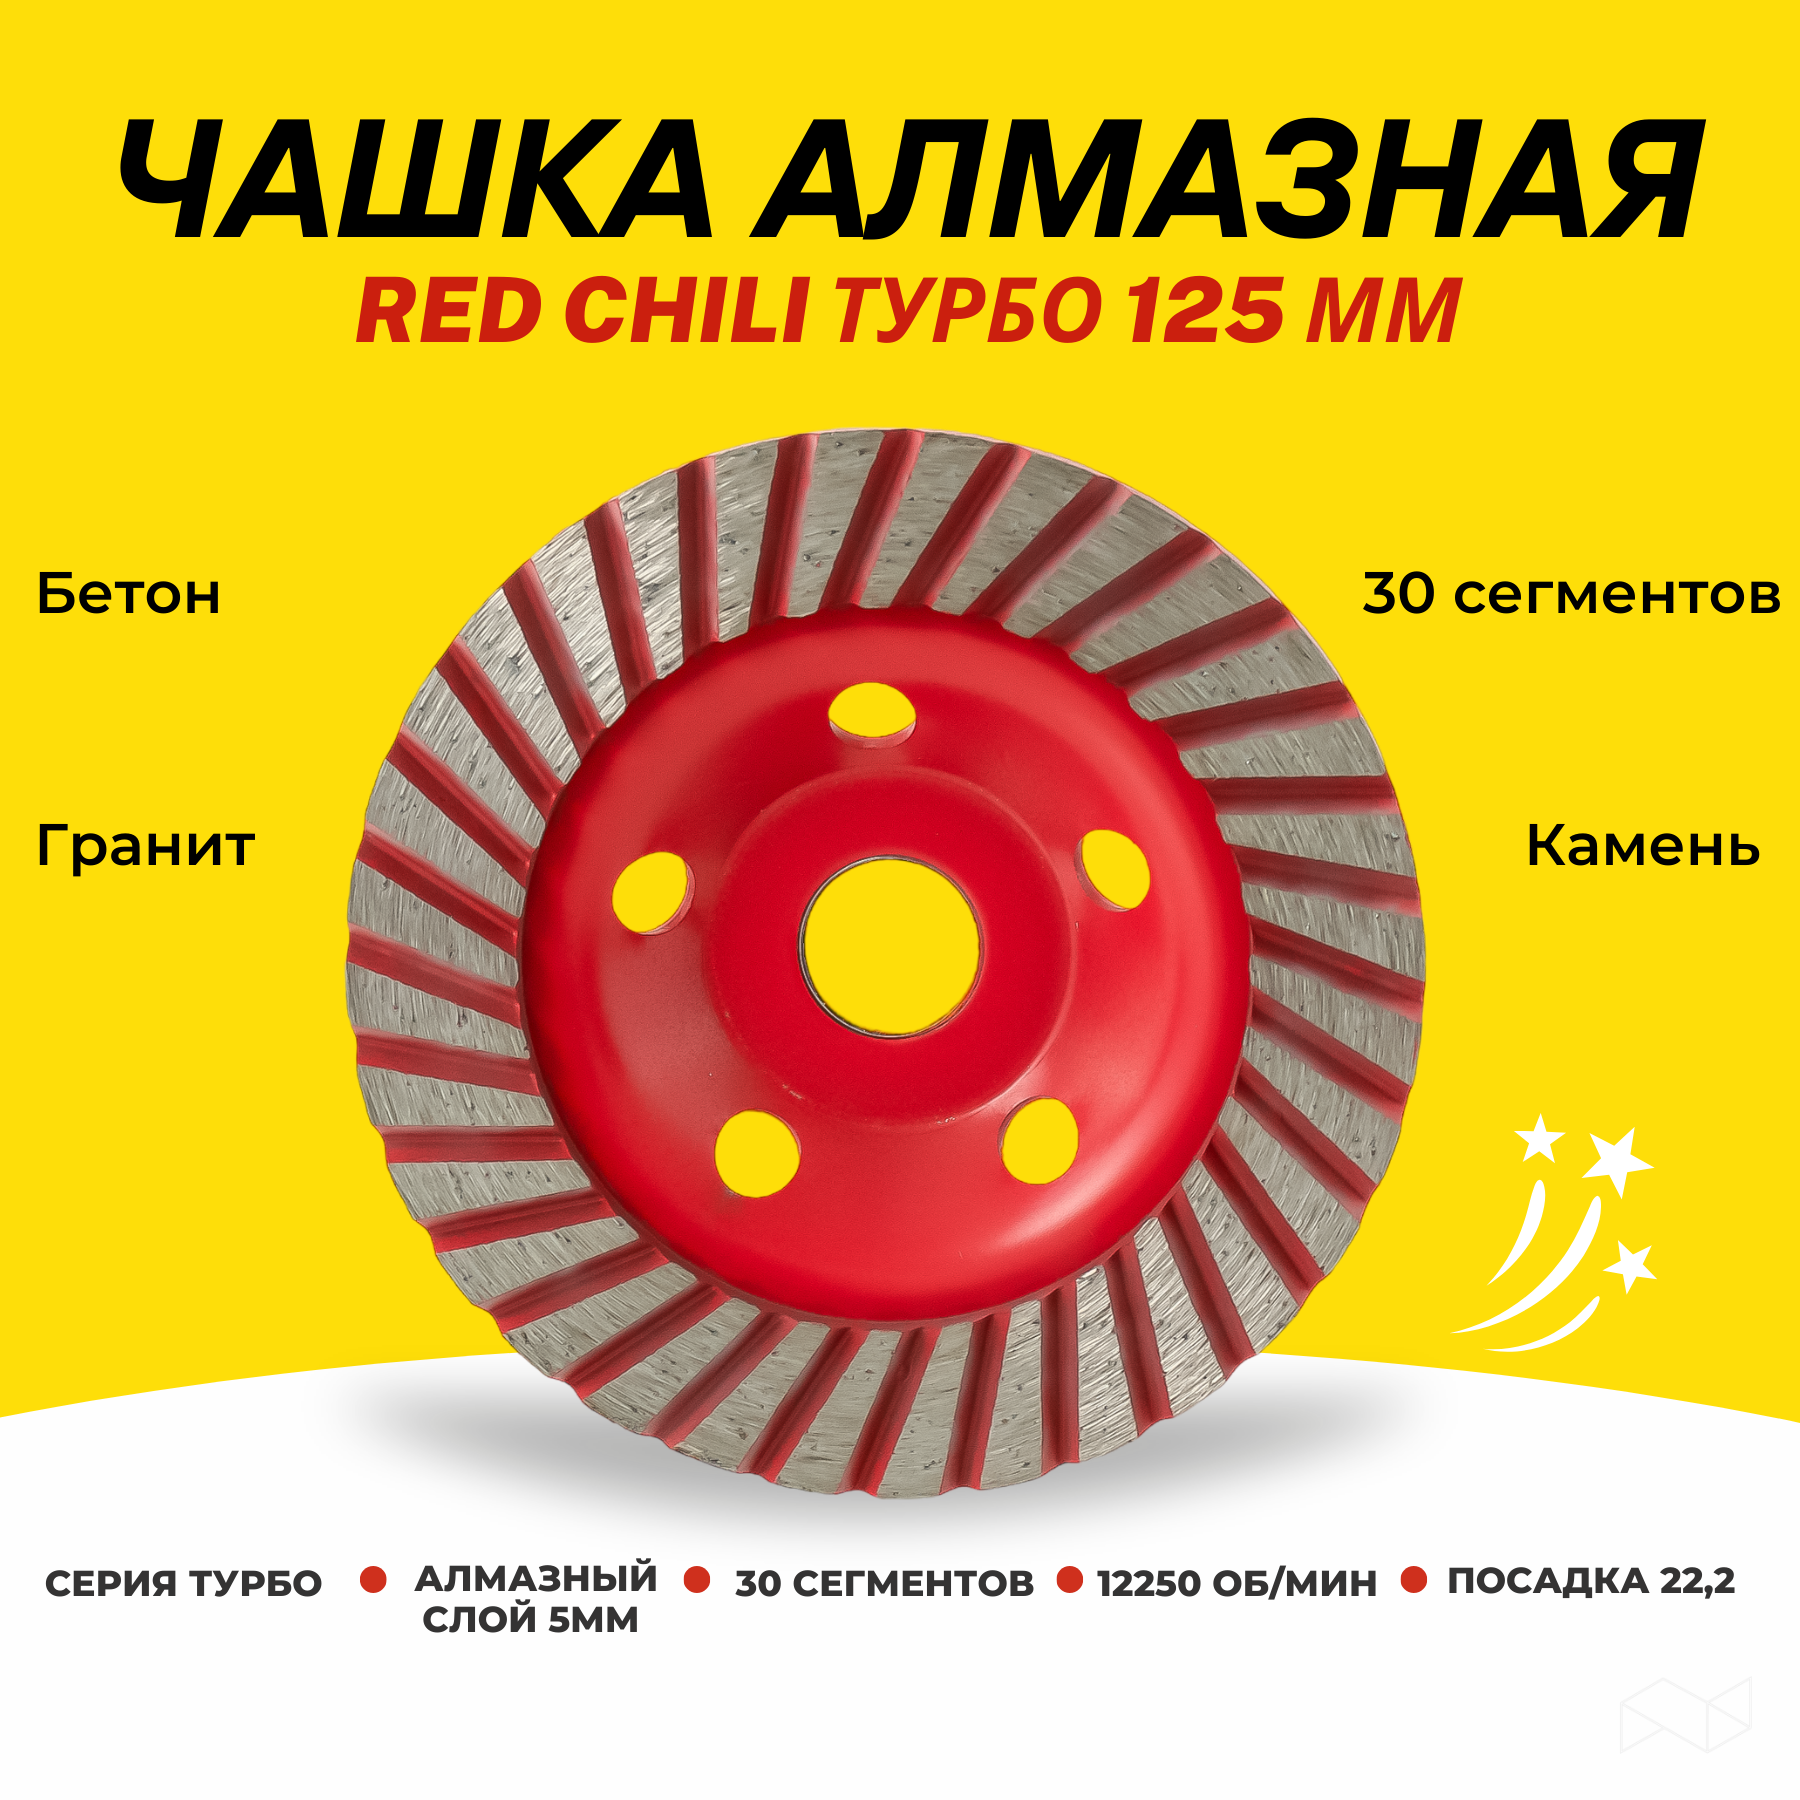 Чашка алмазная Red Chili 125мм турбо колбаски сырокопченые ремит kabanos chili 70 гр